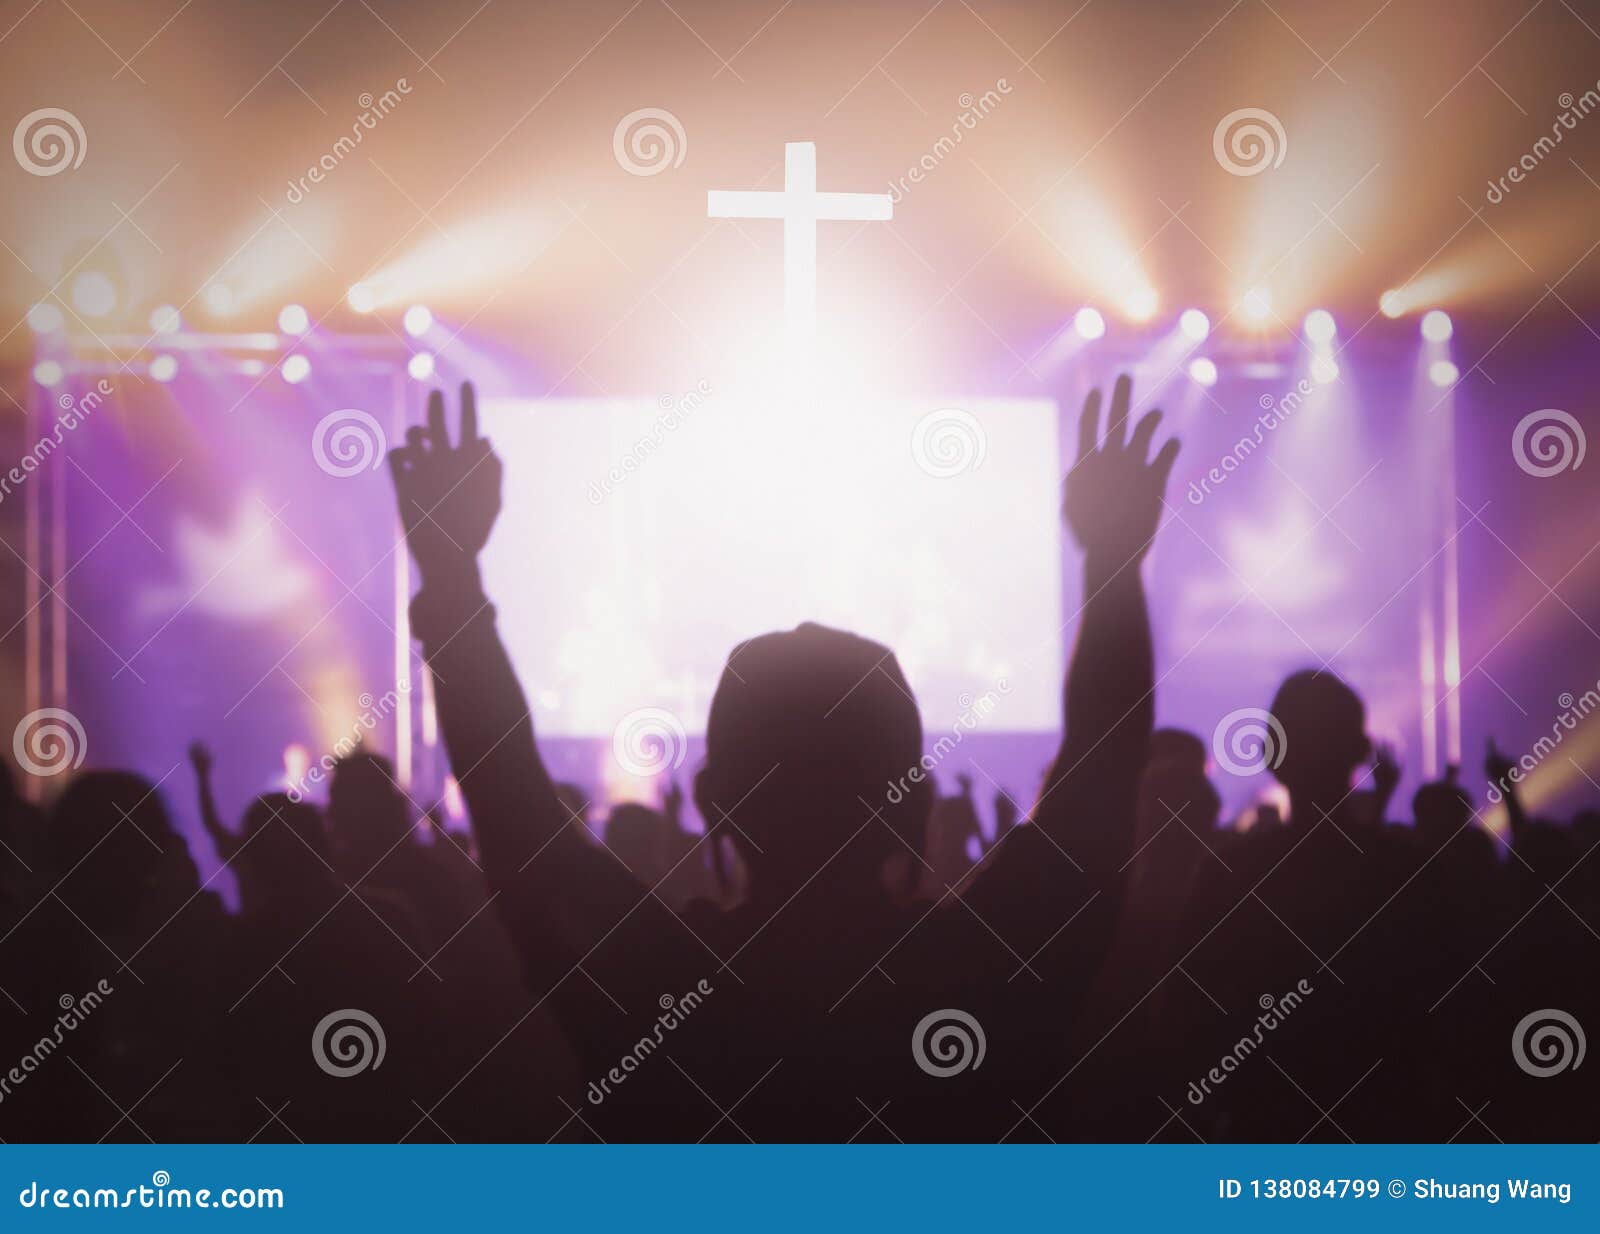 Сборник прославления и поклонения. Прославление фото. Поклонение айфону. Иисус держит крест в руках обои.